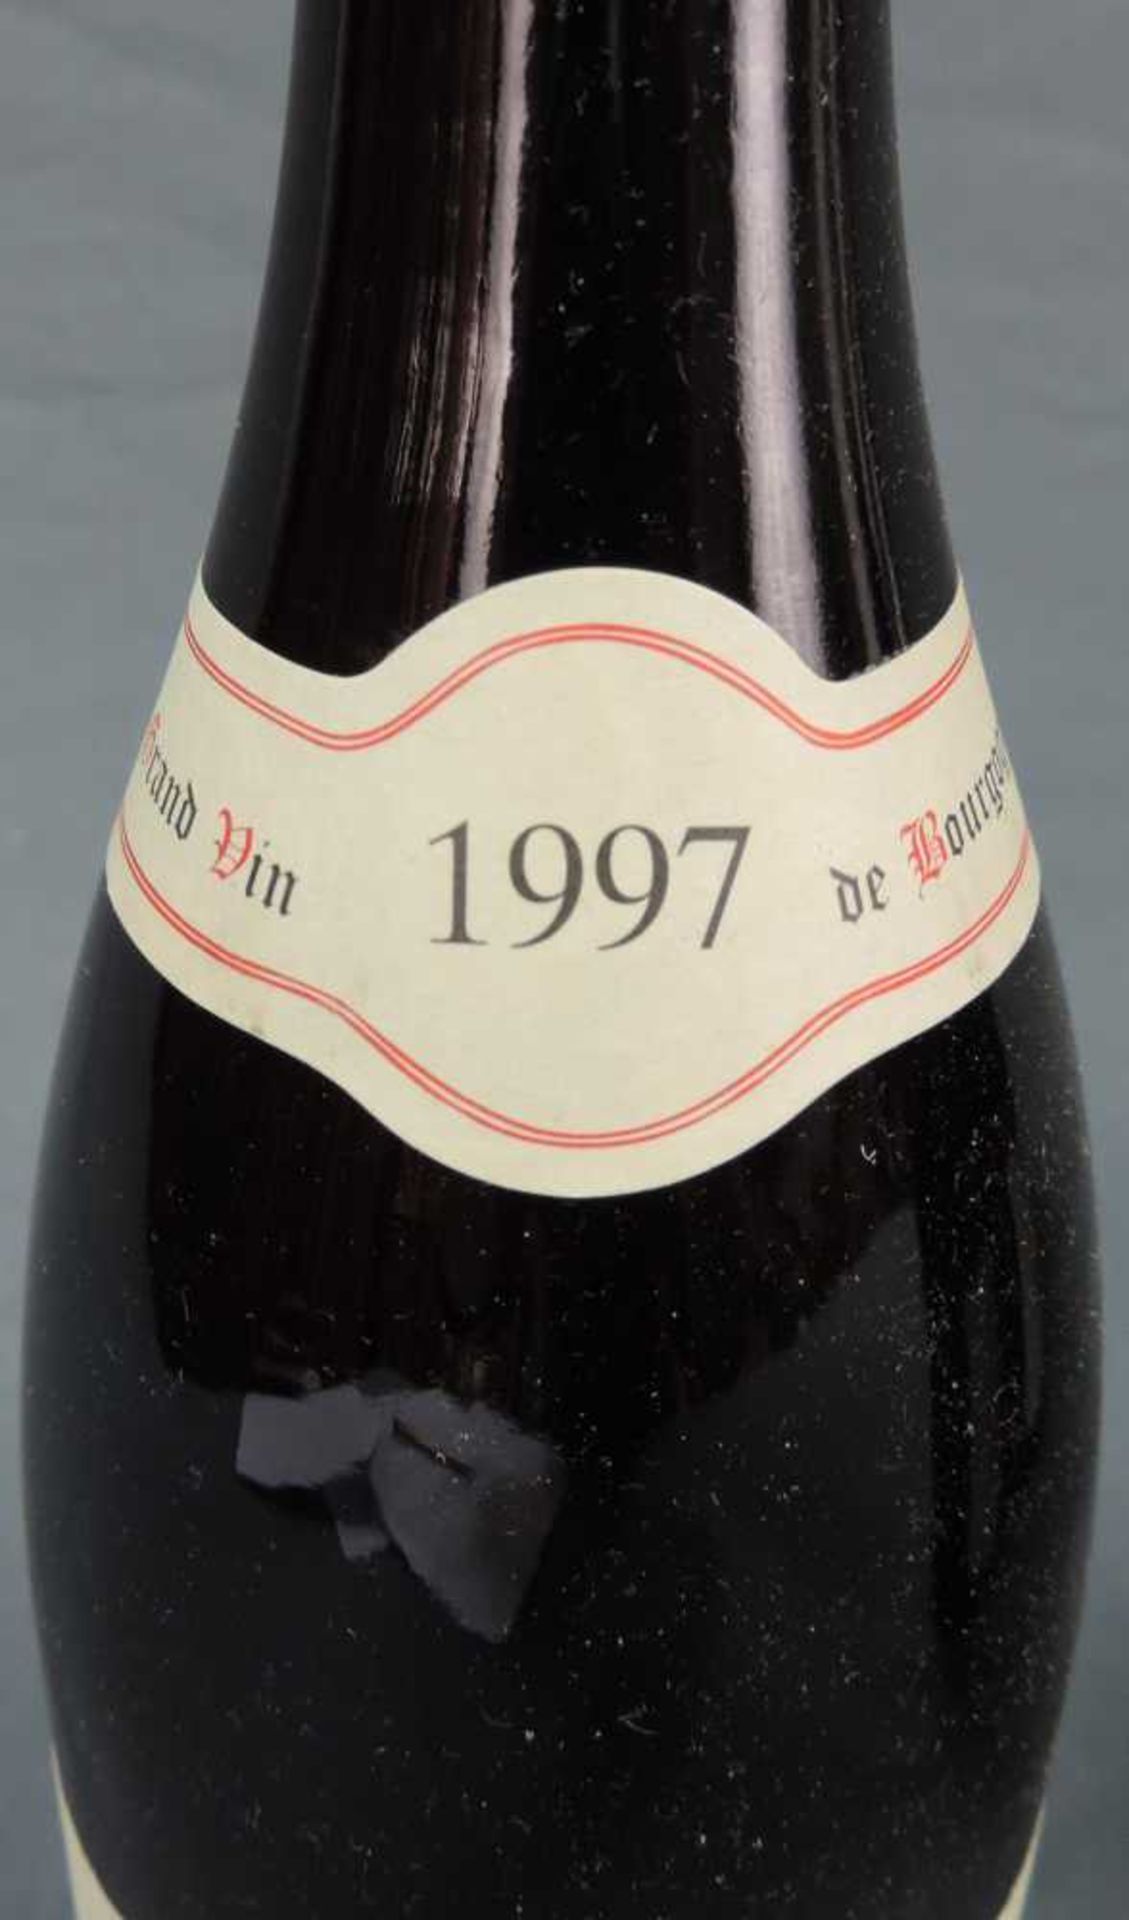 1997 Domaine Prieur - Brunet, Pommard Premier Cru Les Platieres, France. 9 Flaschen, 750 ml, Alc., - Image 6 of 6